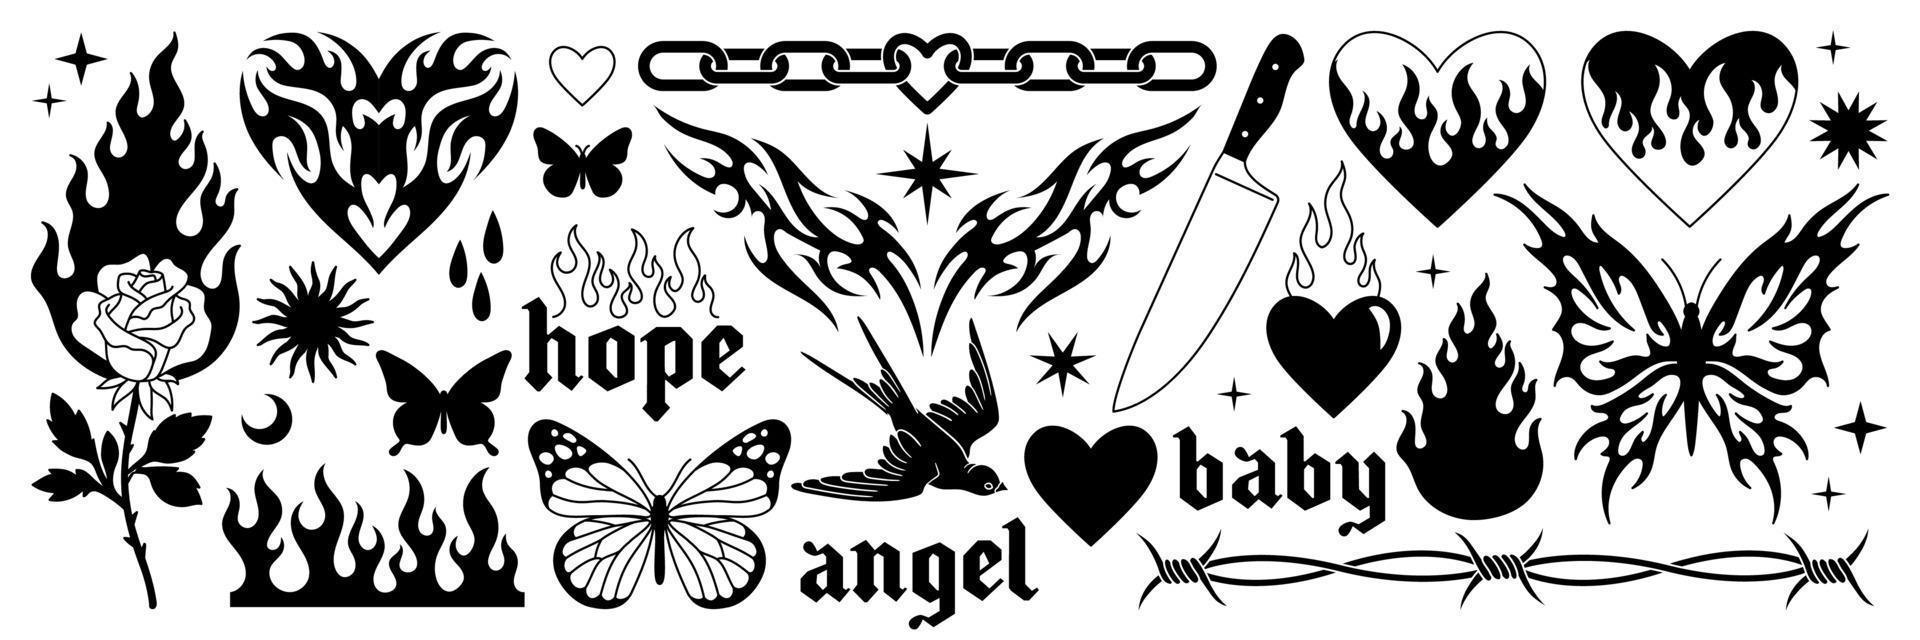 arte del tatuaje 1990, 2000. pegatinas y2k. mariposa, alambre de púas, fuego, llama, cadena, corazón. vector